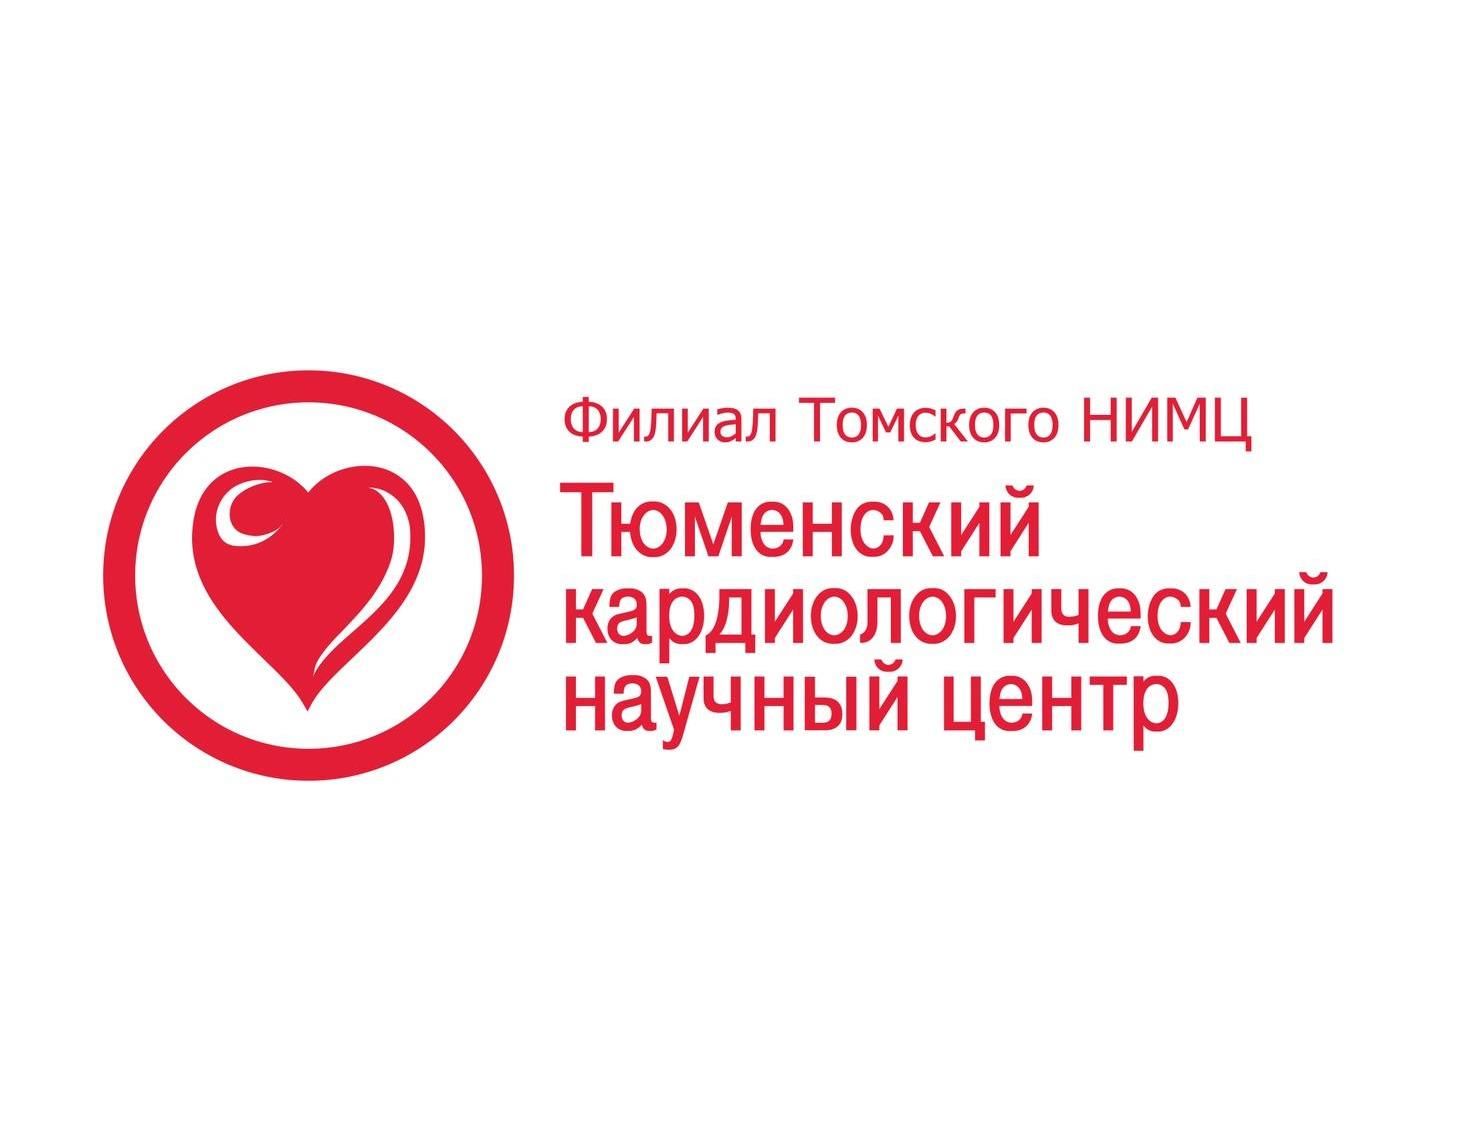 Международный конгресс по ядерной кардиологии и компьютерной томографии Европейского общества кардиологов